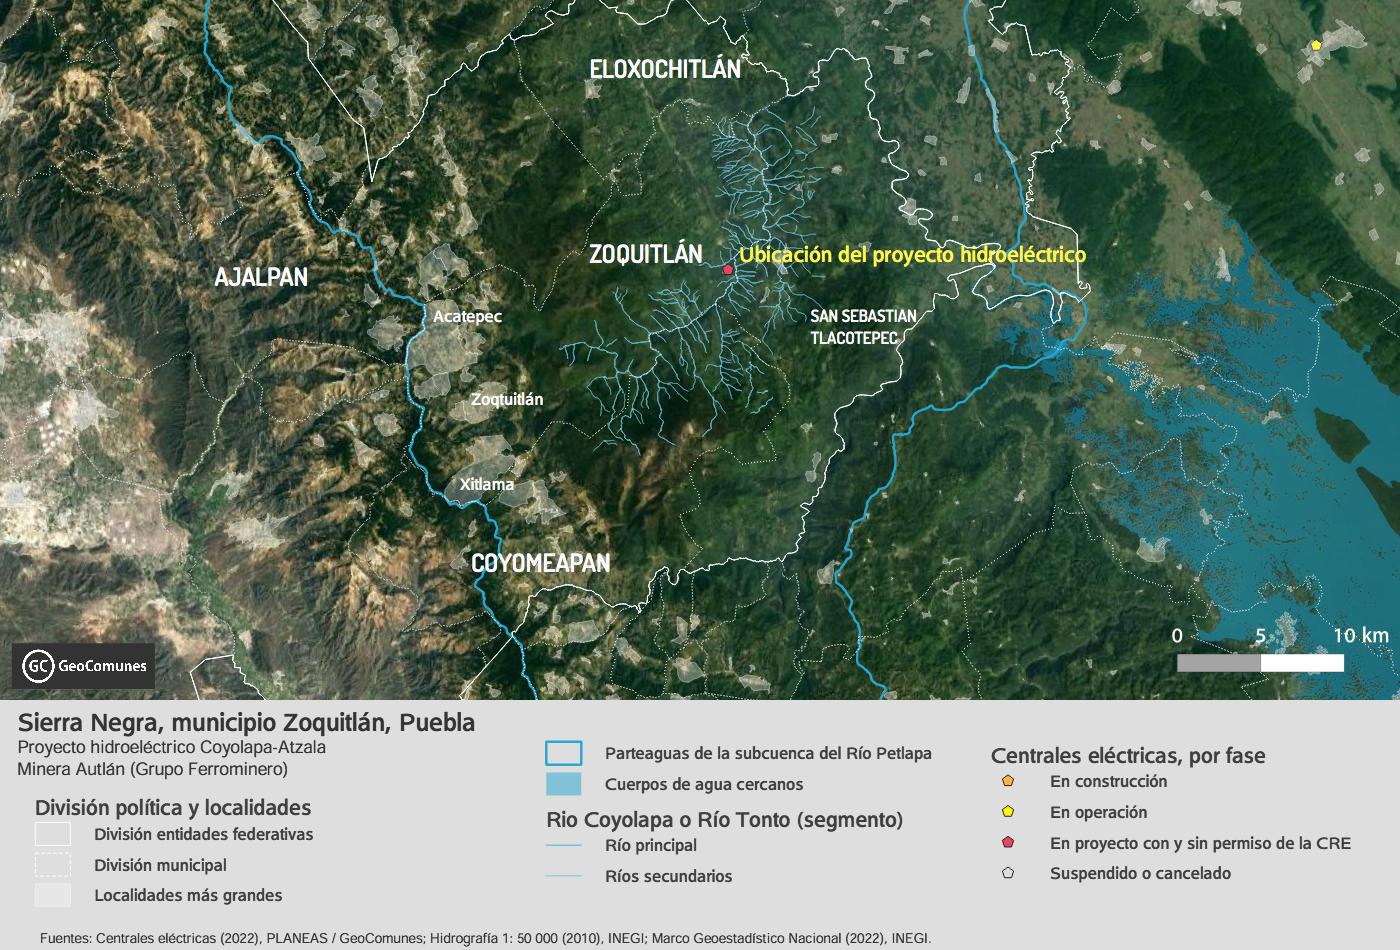 $!Ríos localizados en la región donde se planea el proyecto hidroeléctrico.